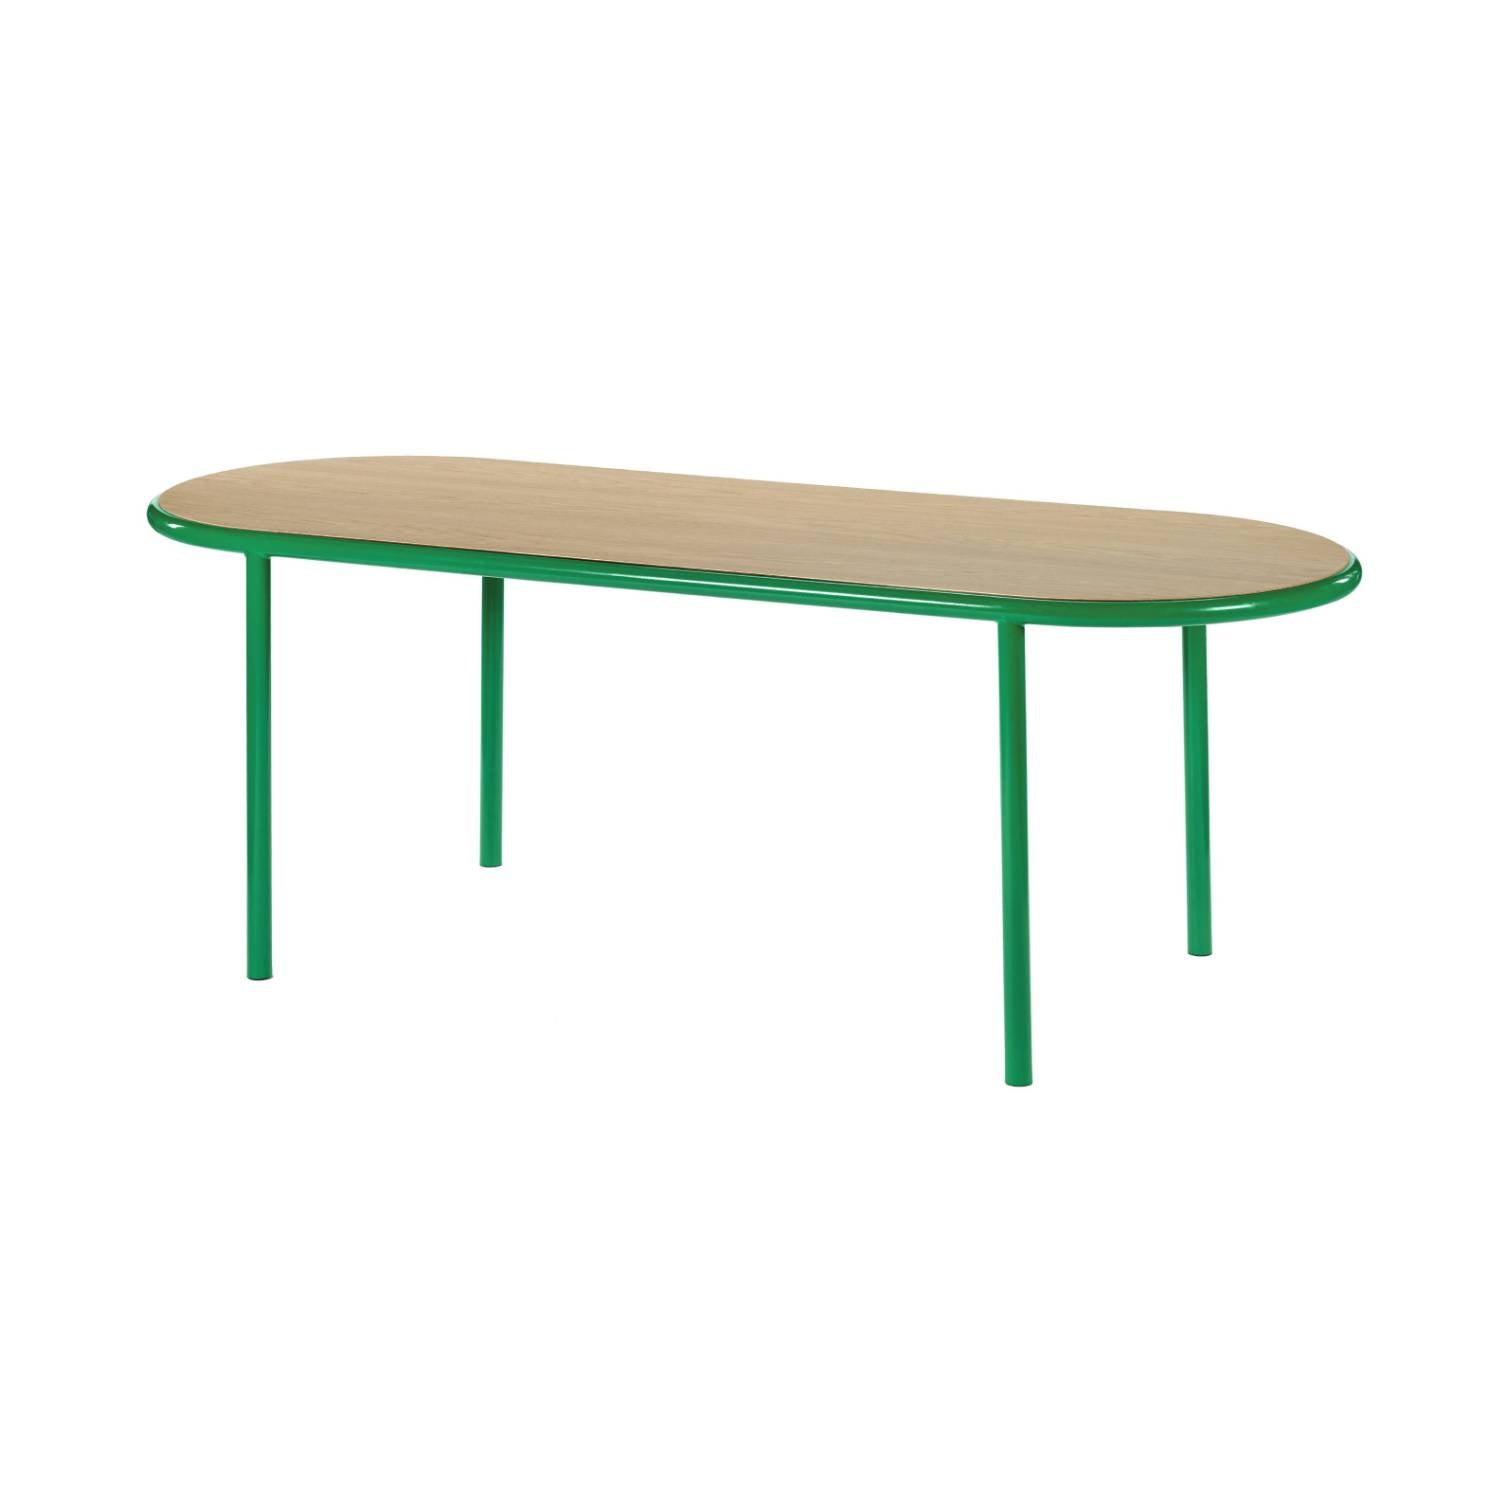 Wooden Table: Oval + Oak + Green